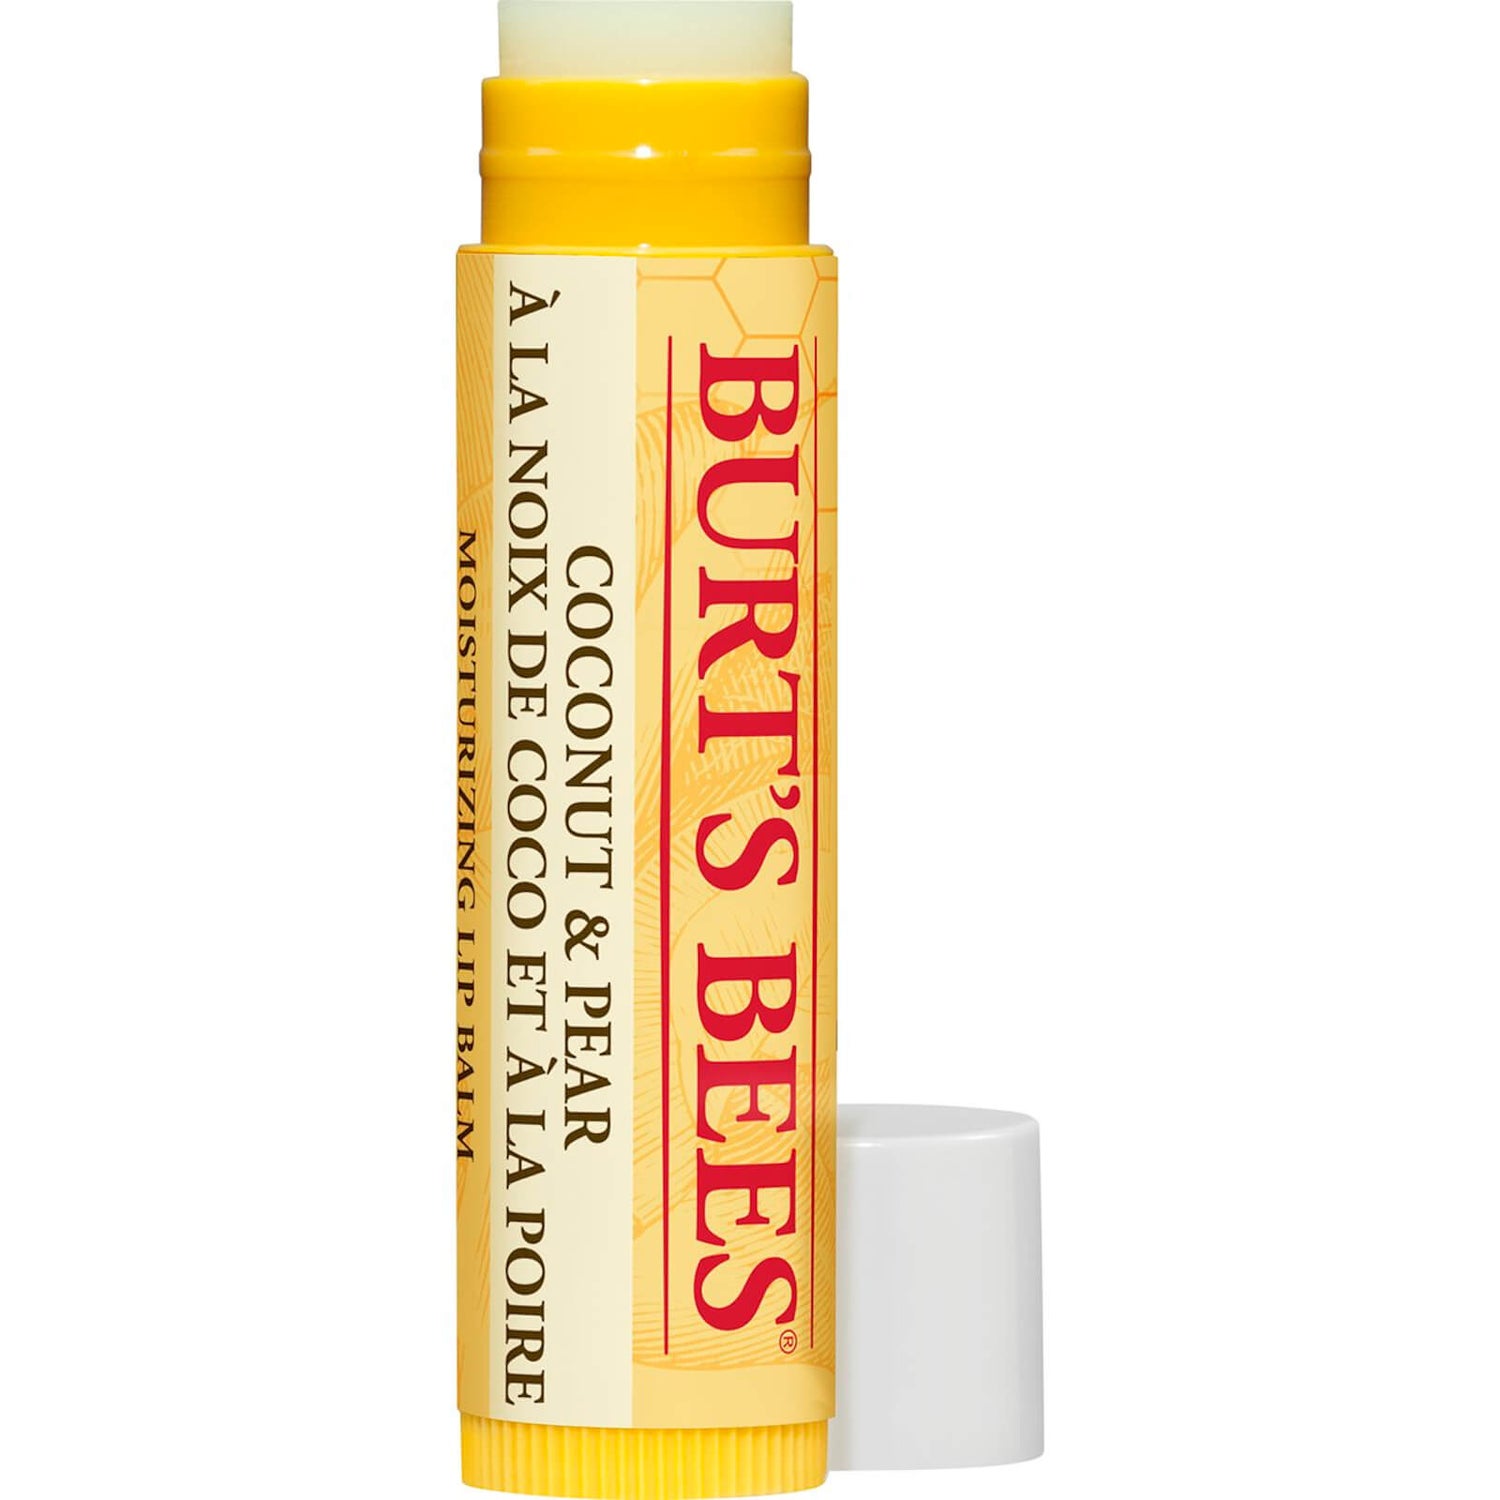 Burt's Bees Baume à lèvres - Noix de coco et poire